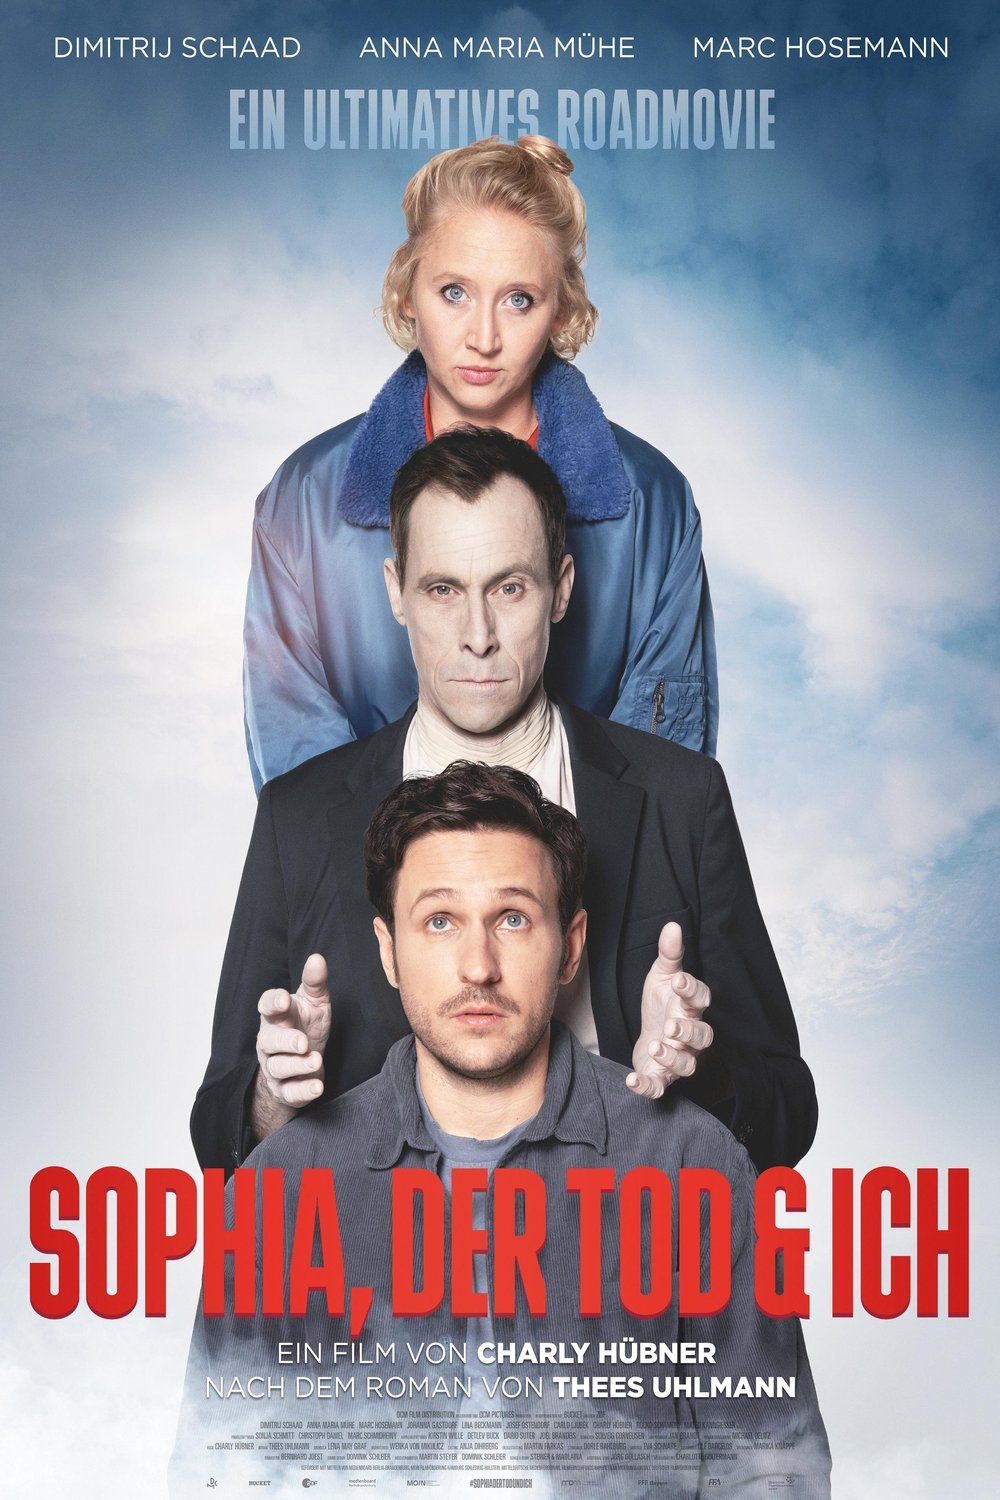 German poster of the movie Sophia, der Tod und ich